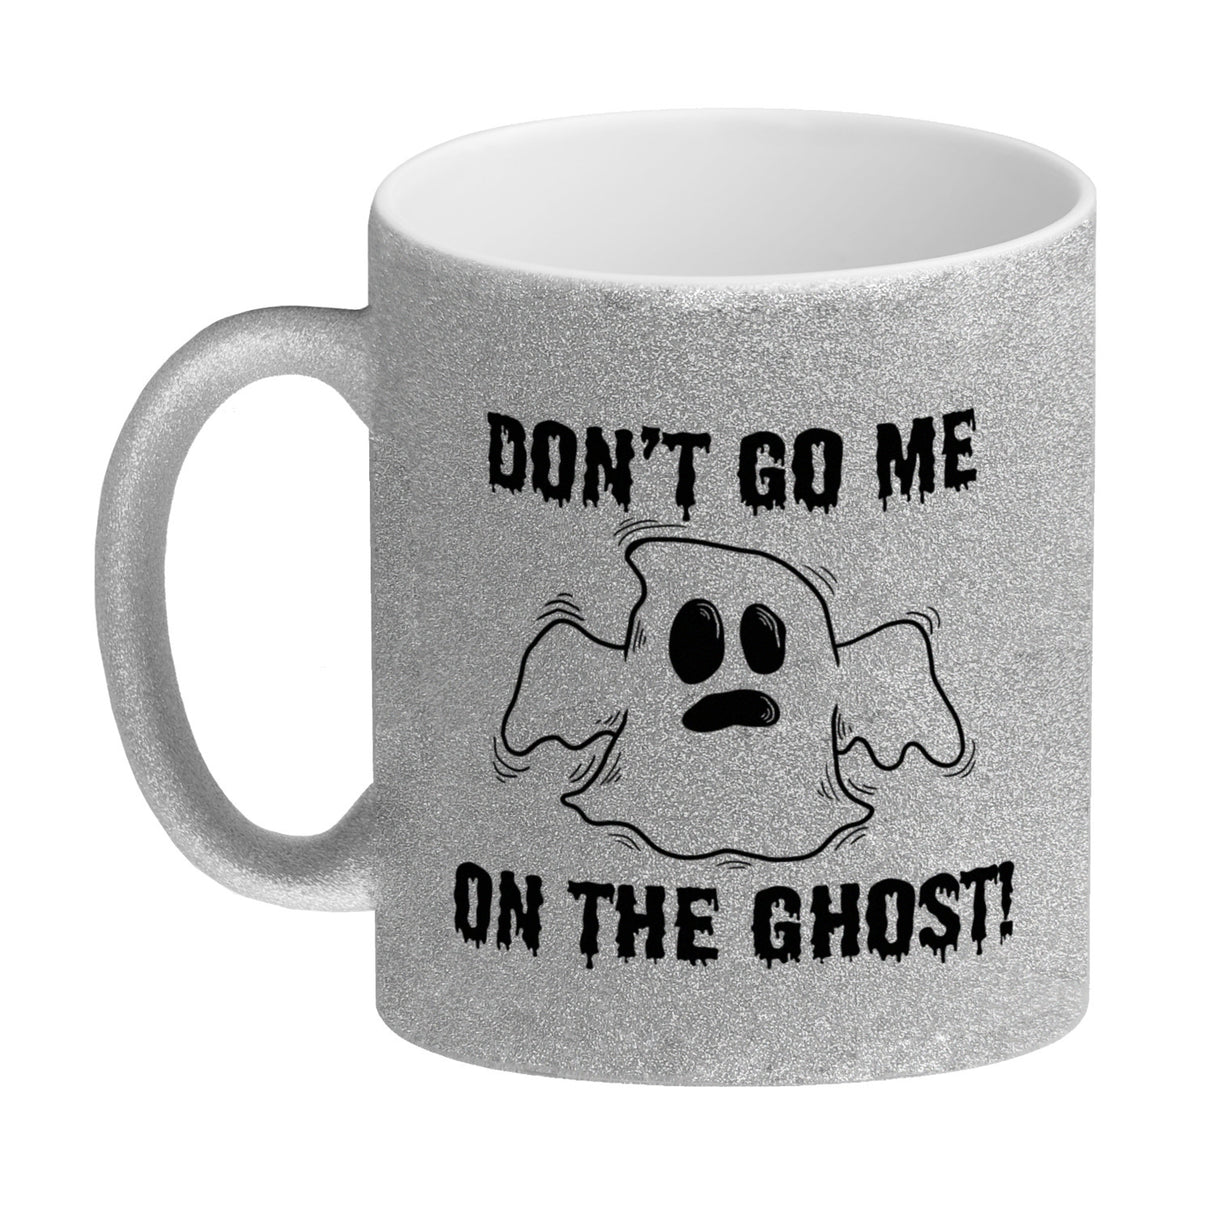 Kaffeebecher mit witzigem Geistermotiv und Spruch - Don't go me on the Ghost